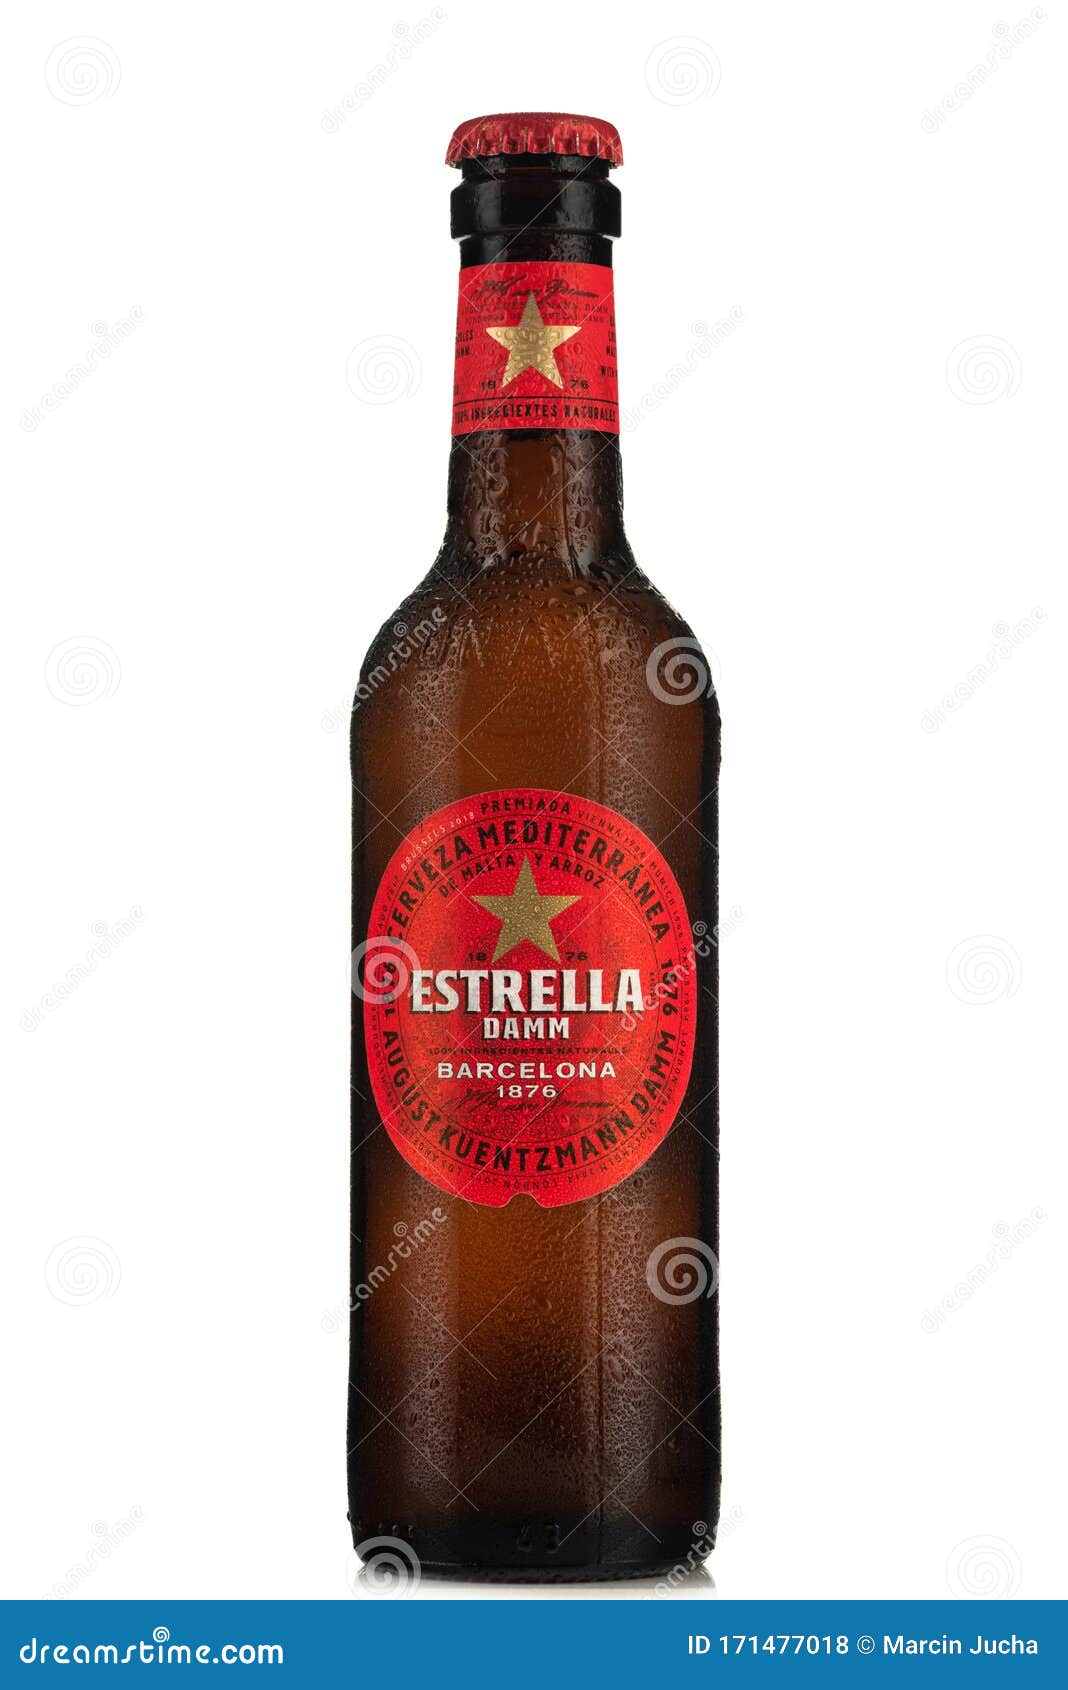 Tarnow πολωνία φεβρουάριος 01 2020 : μπουκάλι κρύας στολας μπύρας. η  ισπανική μάρκα Estrella γίνεται όλο και πιο δημοφιλής Εκδοτική Στοκ Εικόνες  - εικόνα από : 171477018